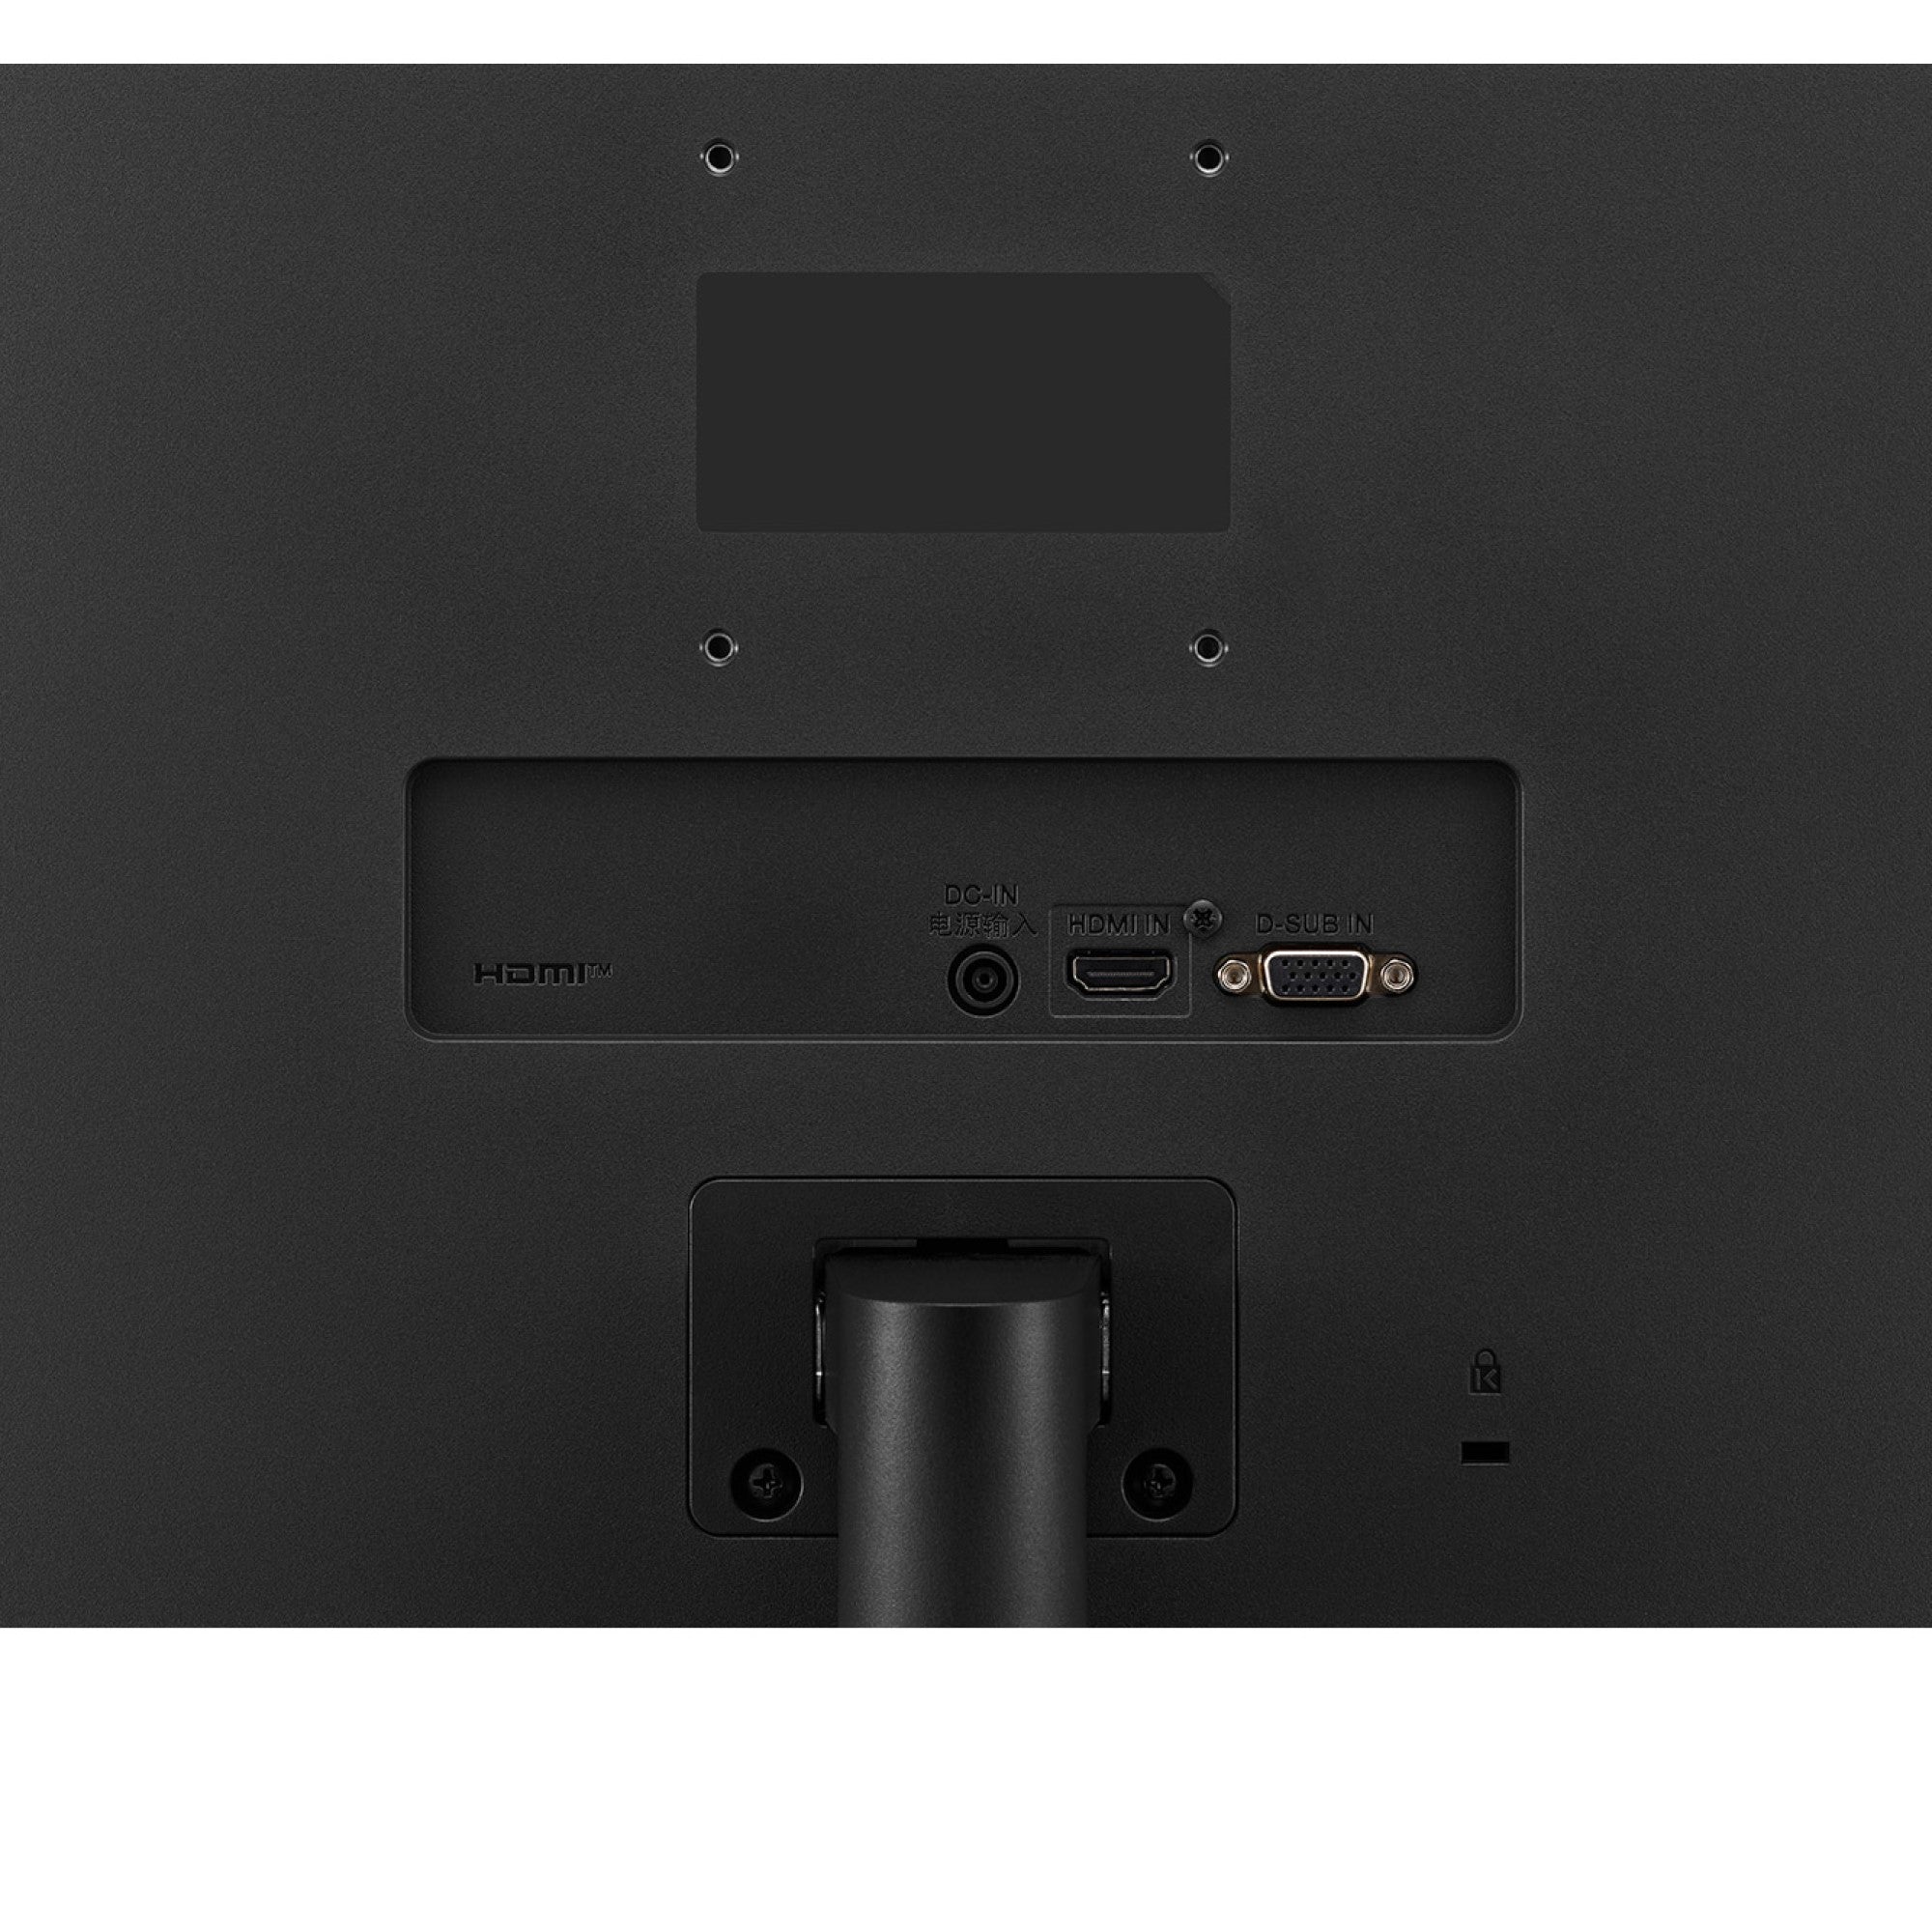 ال جي (27MP400-B) شاشة بتقنية IPS ذات دقة عالية الوضوح بالكامل مقاس 27 بوصة وتصميم بدون حواف فعليًا من ثلاثة جوانب 75Hz